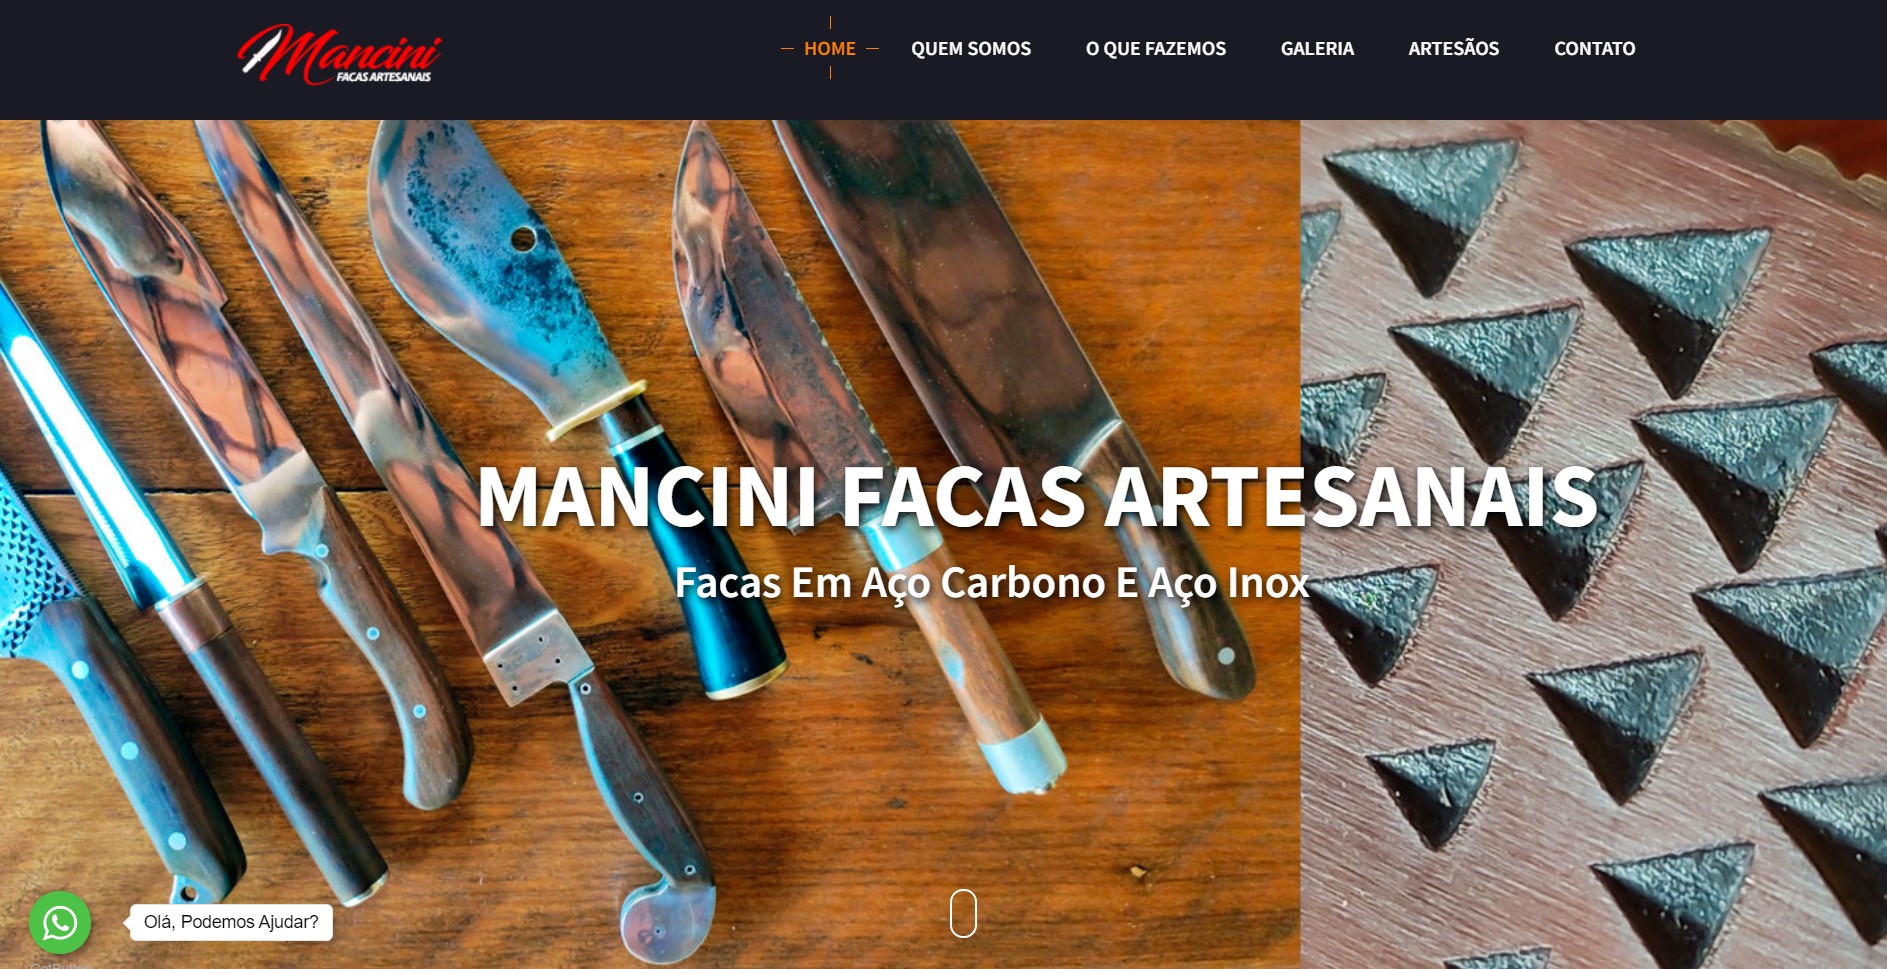  Novo Projeto Web no Ar! Mancini Facas Artesanais